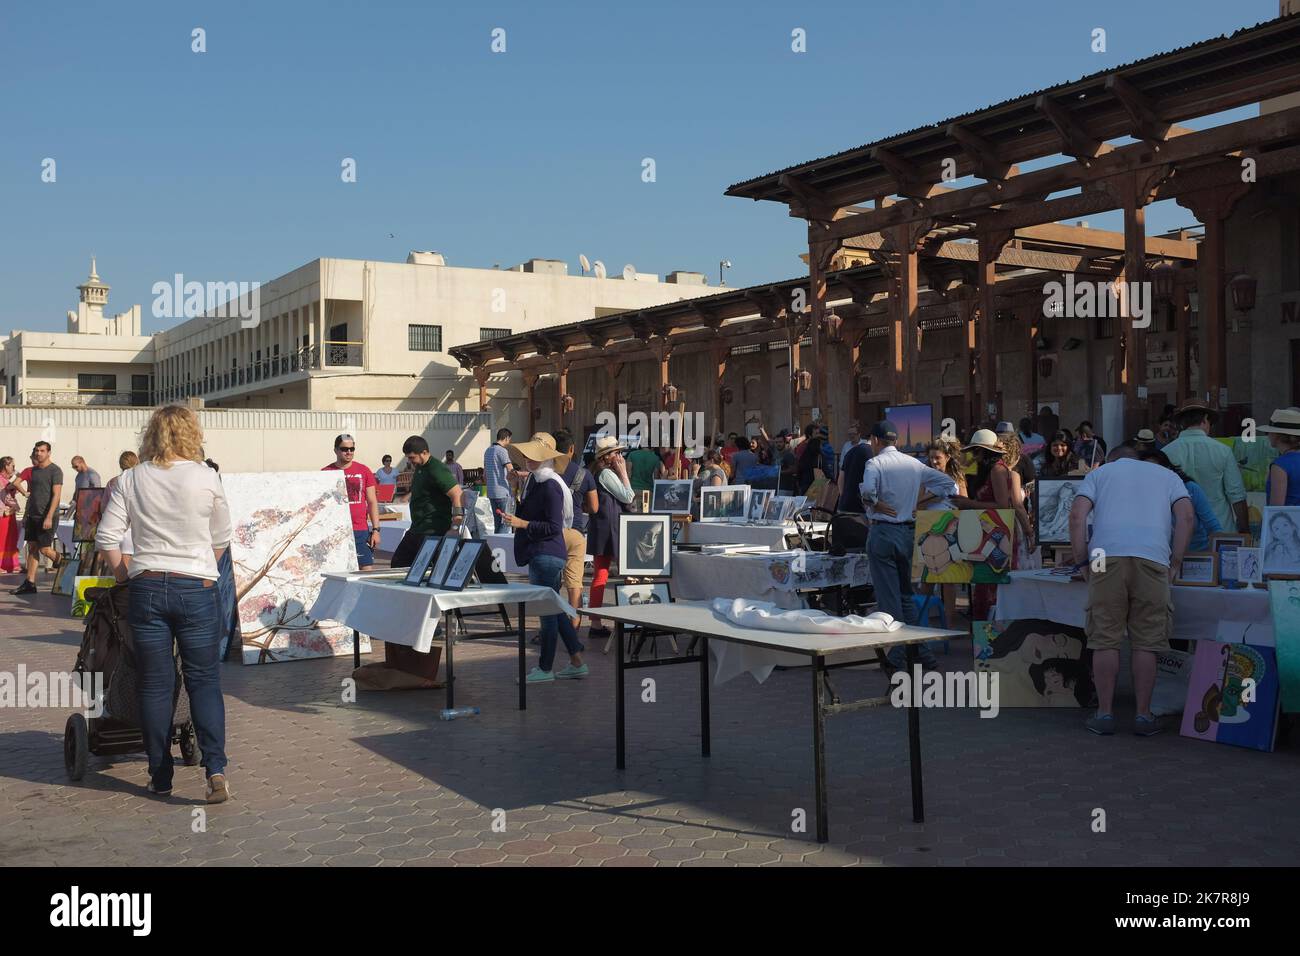 Tavoli con opere di artisti locali in una fiera d'arte nella storica al Fahidi. Soleggiato evento all'aperto nella moderna città di Dubai, Emirati Arabi Uniti. Foto Stock